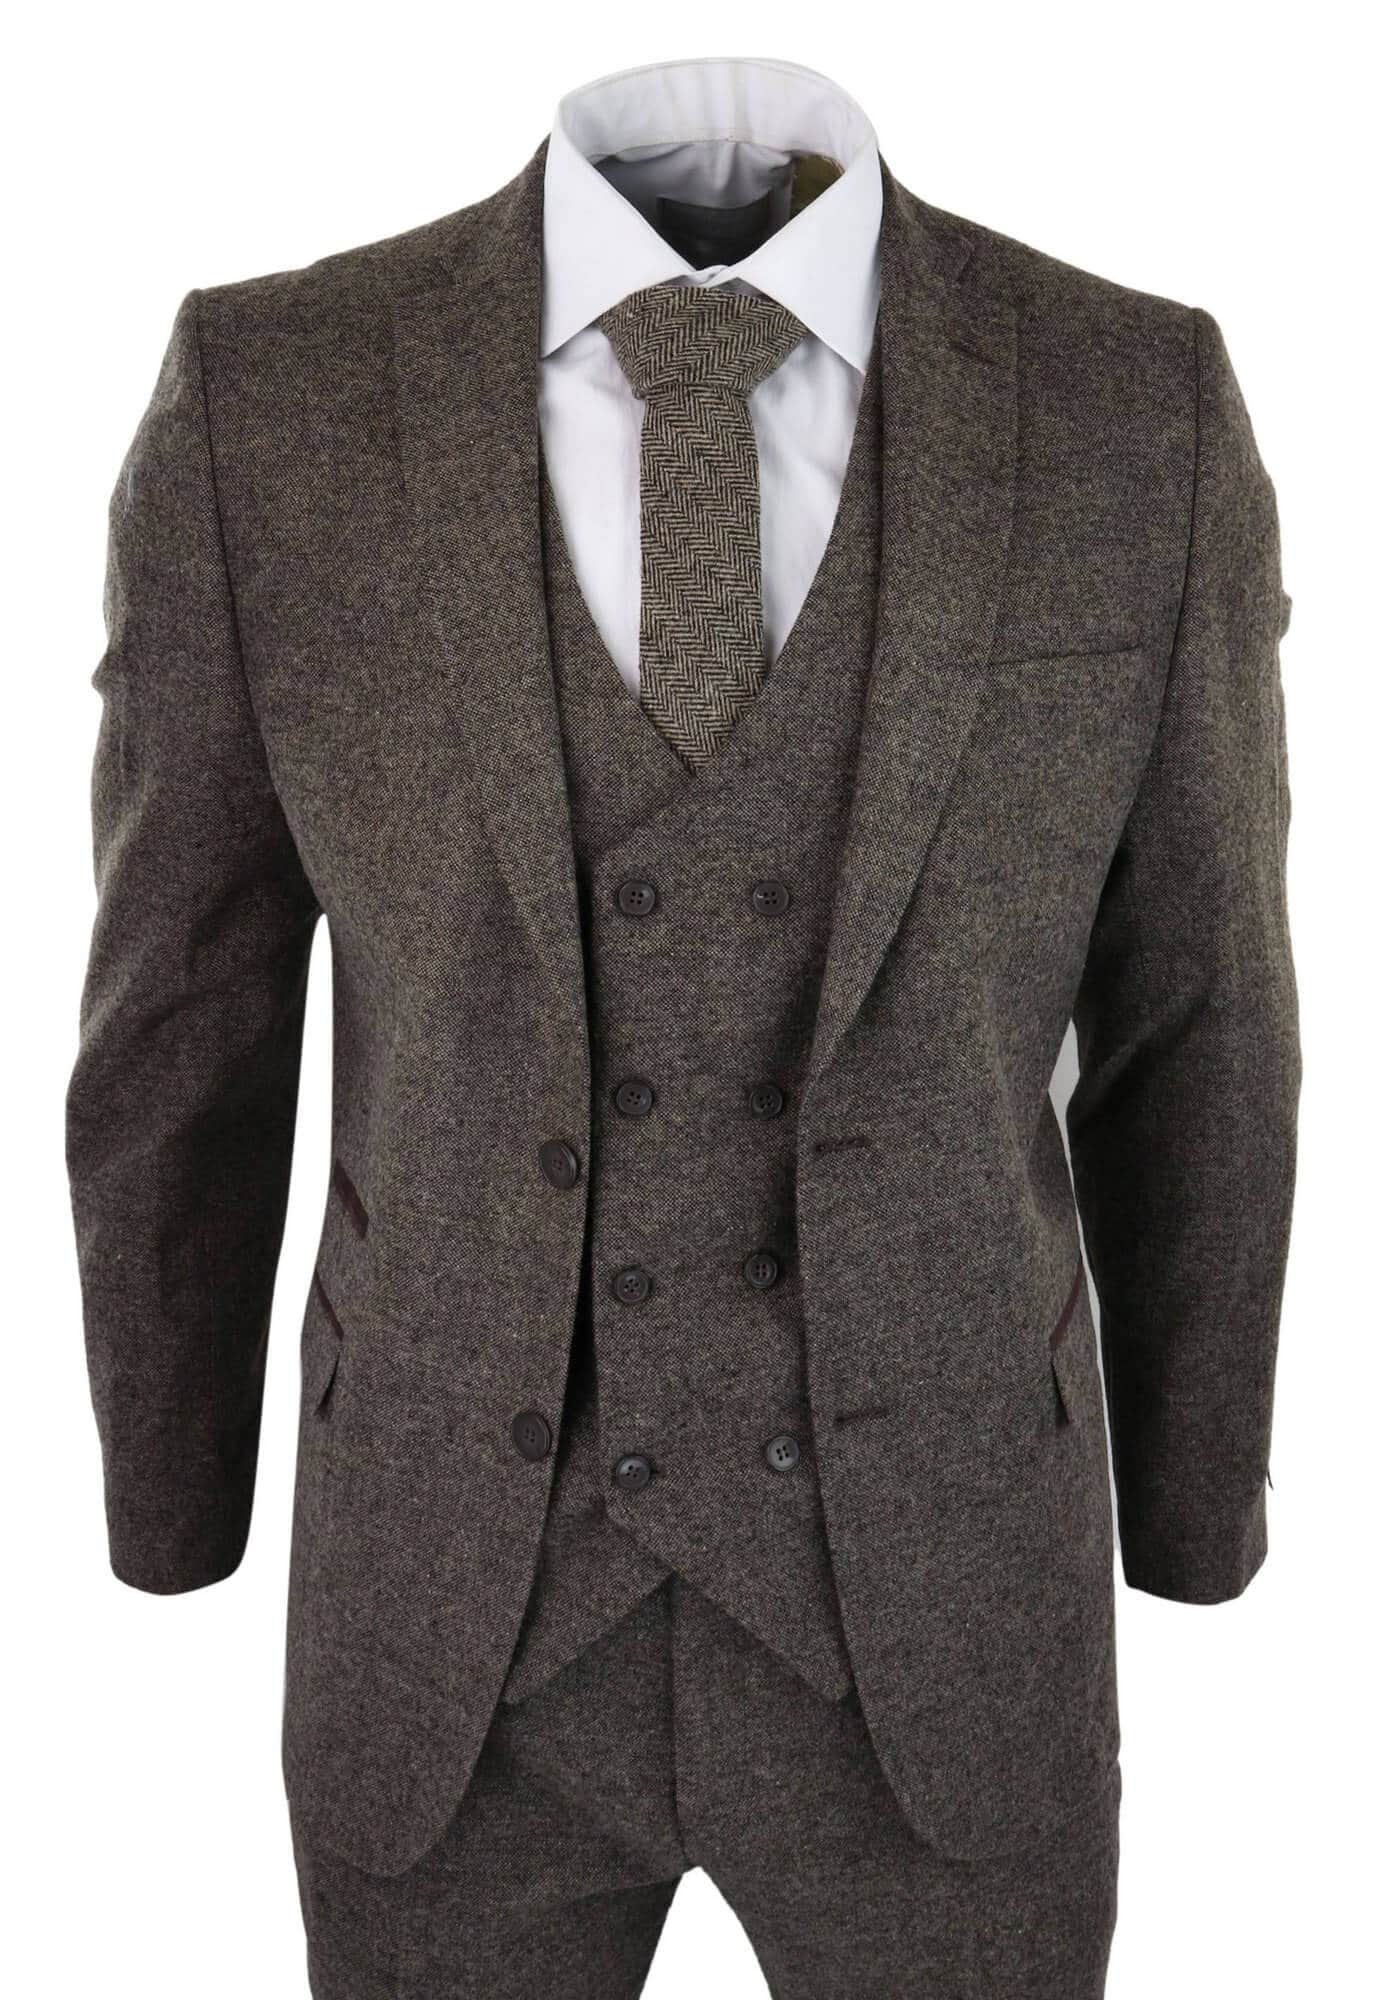 Grey Men's Suit Slim 3 Piece Suit Business Wedding Party Jacket Vest &  Pants - Walmart.com